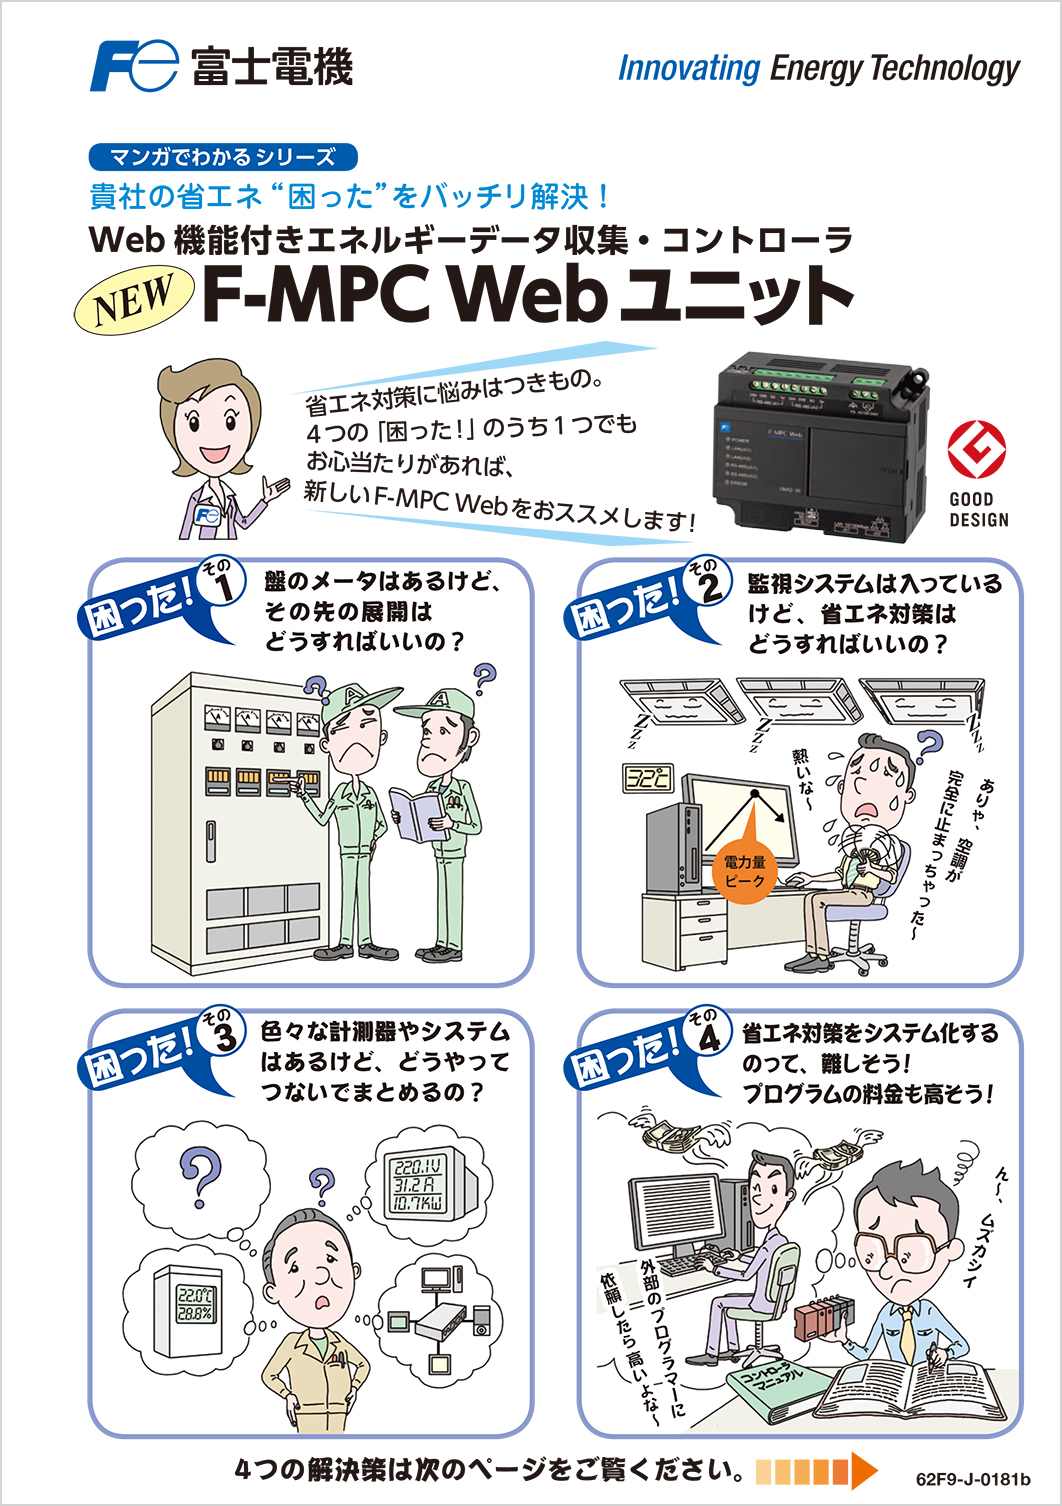 Web機能付きエネルギーデータ収集・コントローラ_F-MPC_Webユニット